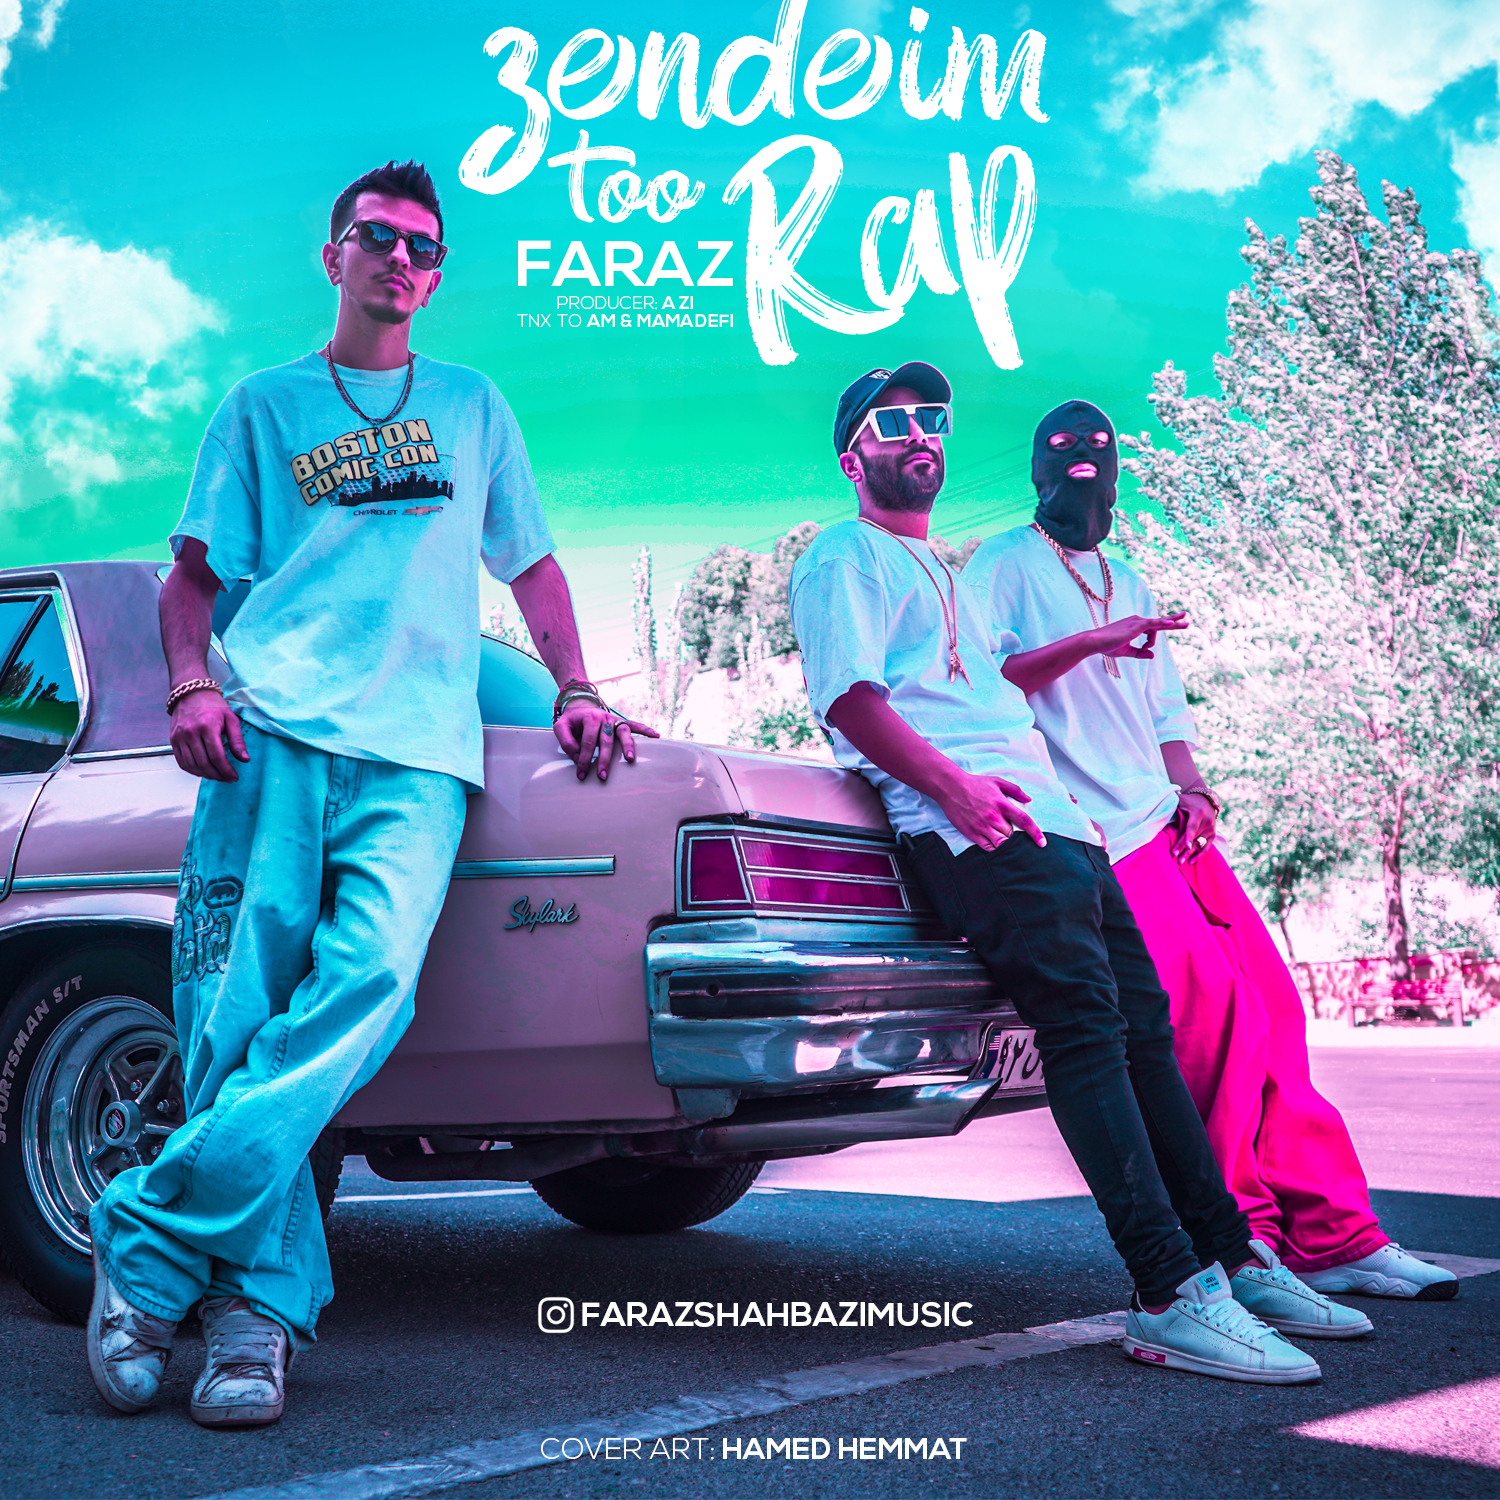  دانلود آهنگ جدید فراز - زنده ایم تو رپ | Download New Music By Faraz - Zendeim Too Rap